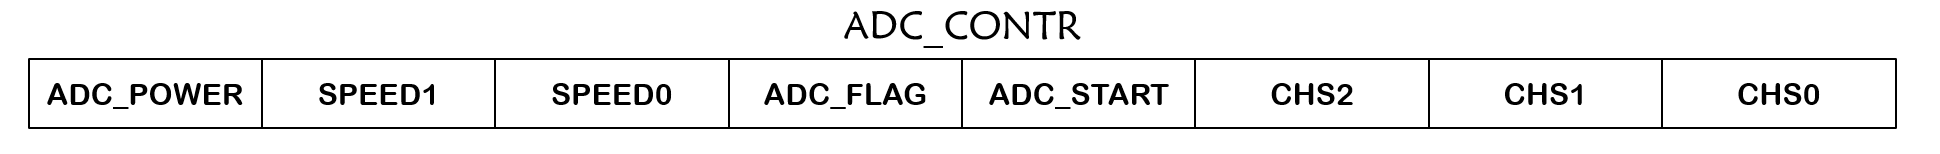 ADC_CONTR寄存器各引脚的标志